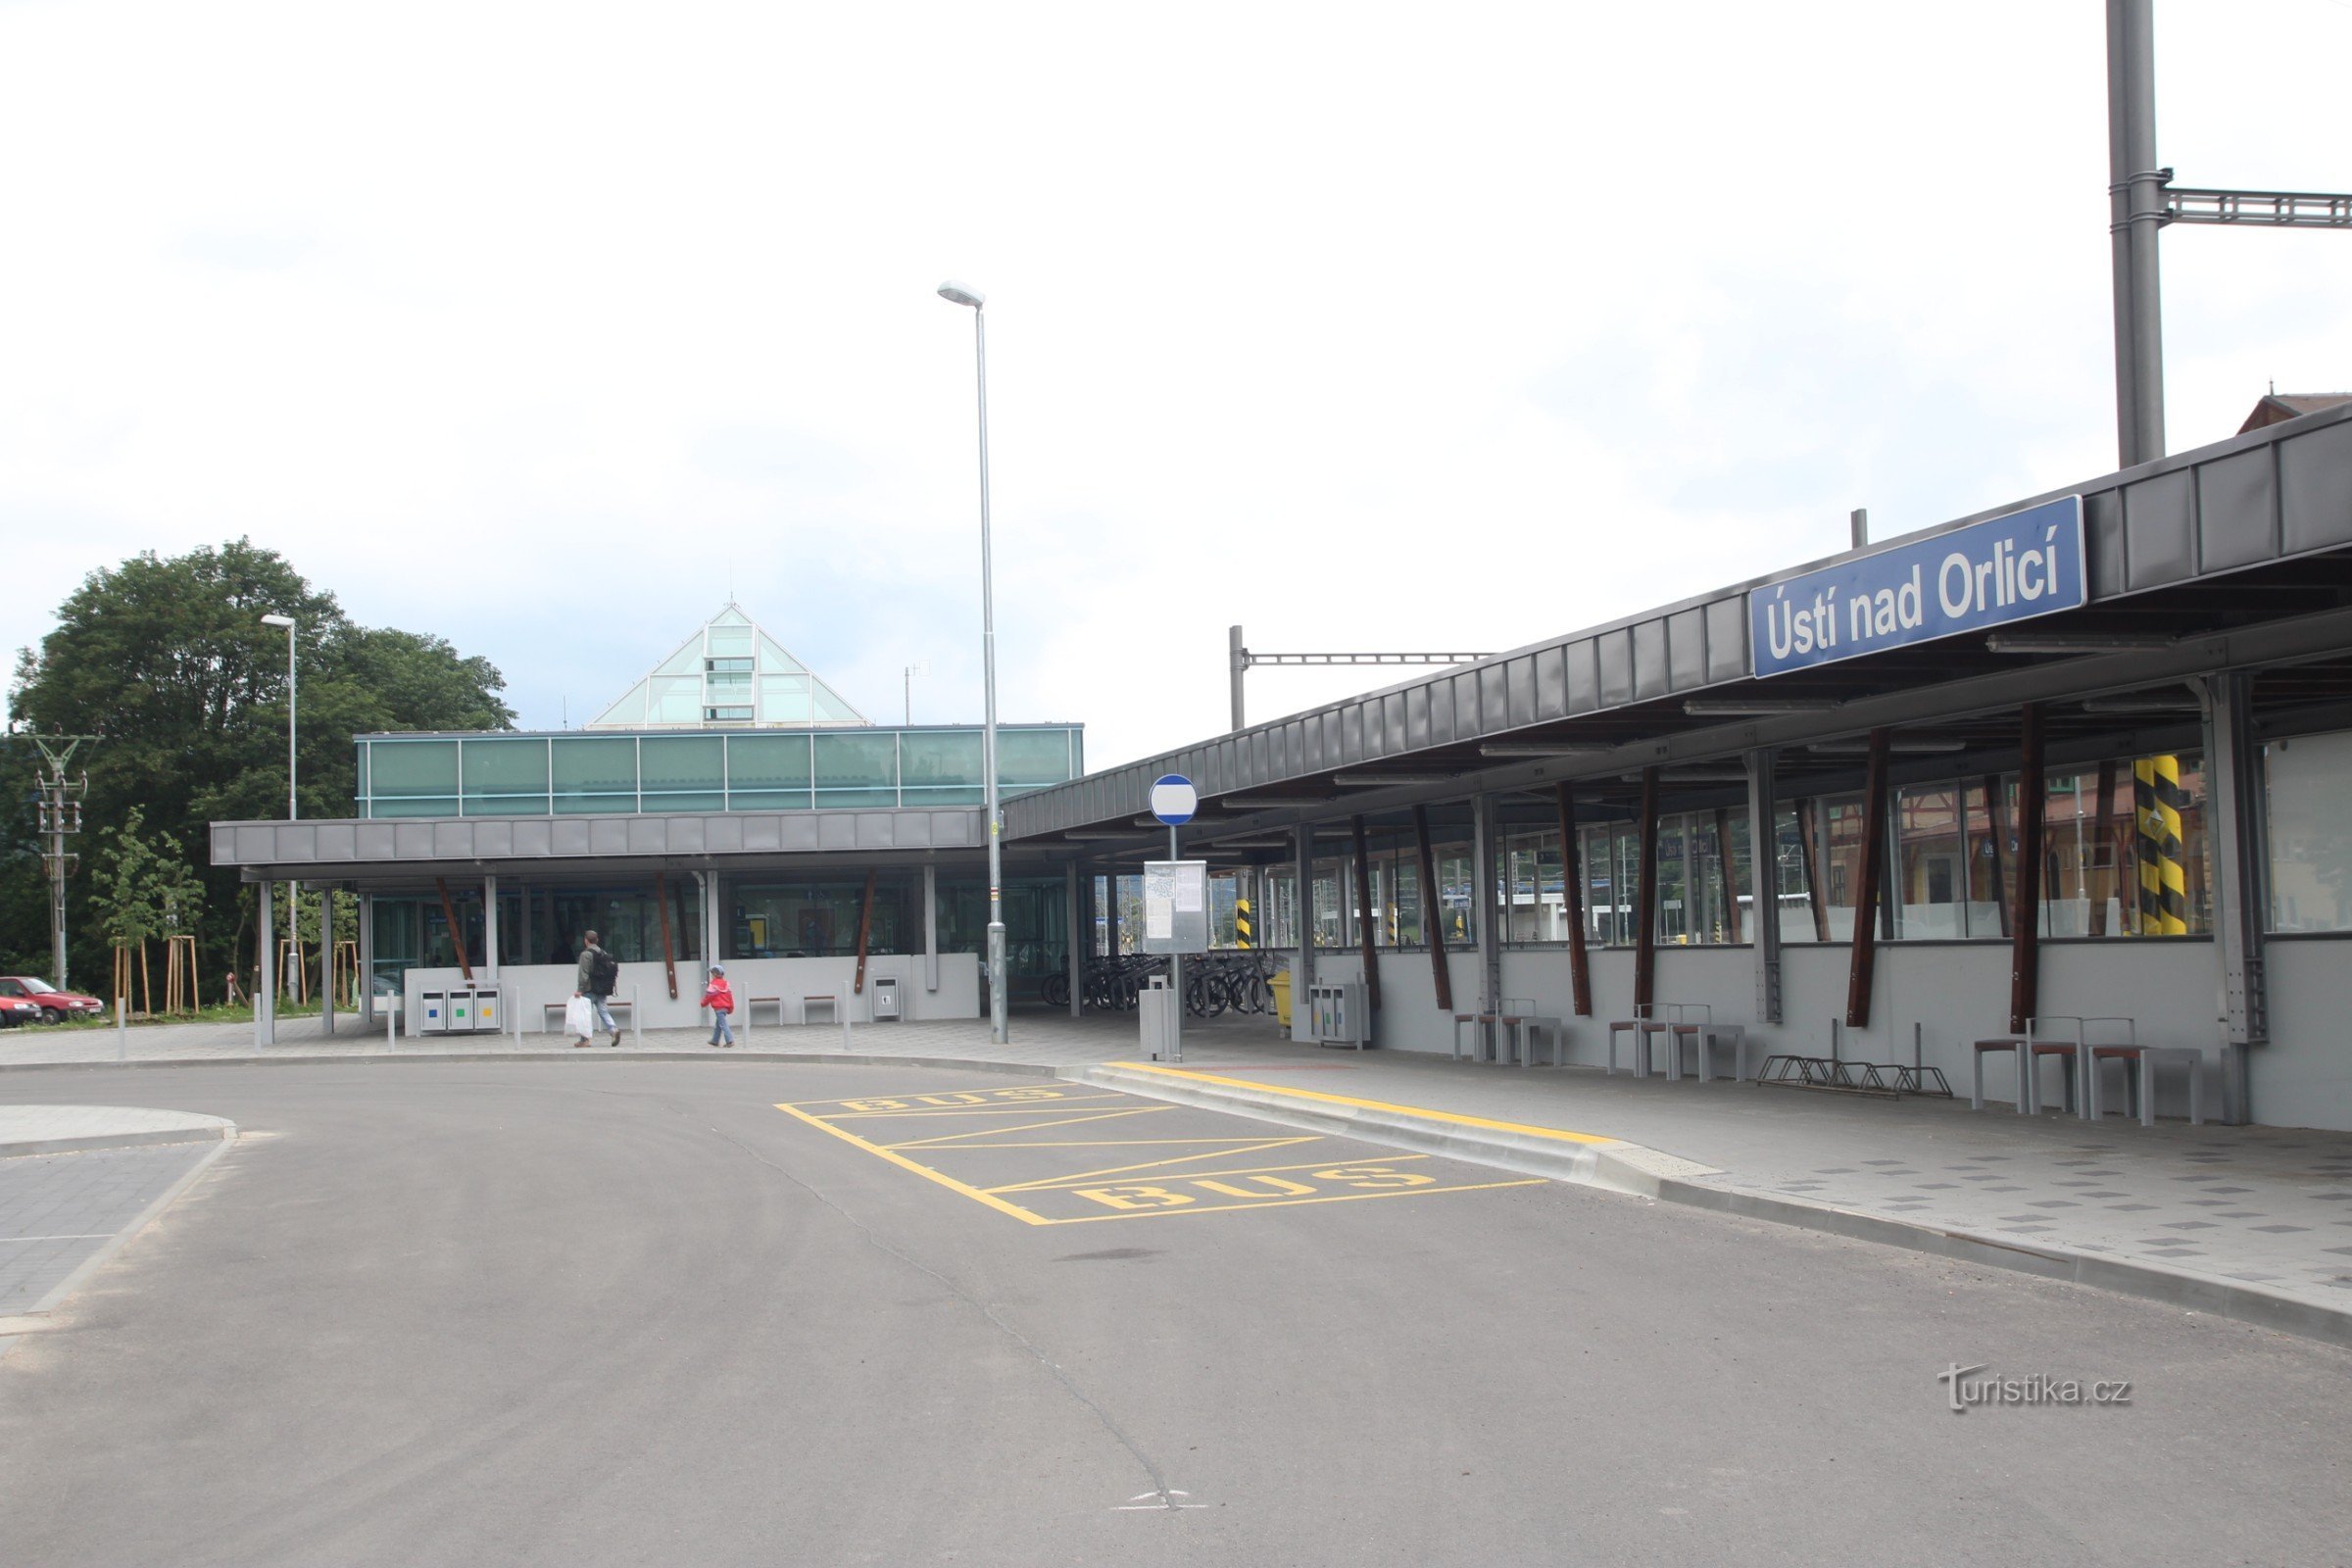 Ο νέος σιδηροδρομικός σταθμός στο Ústí nad Orlicí